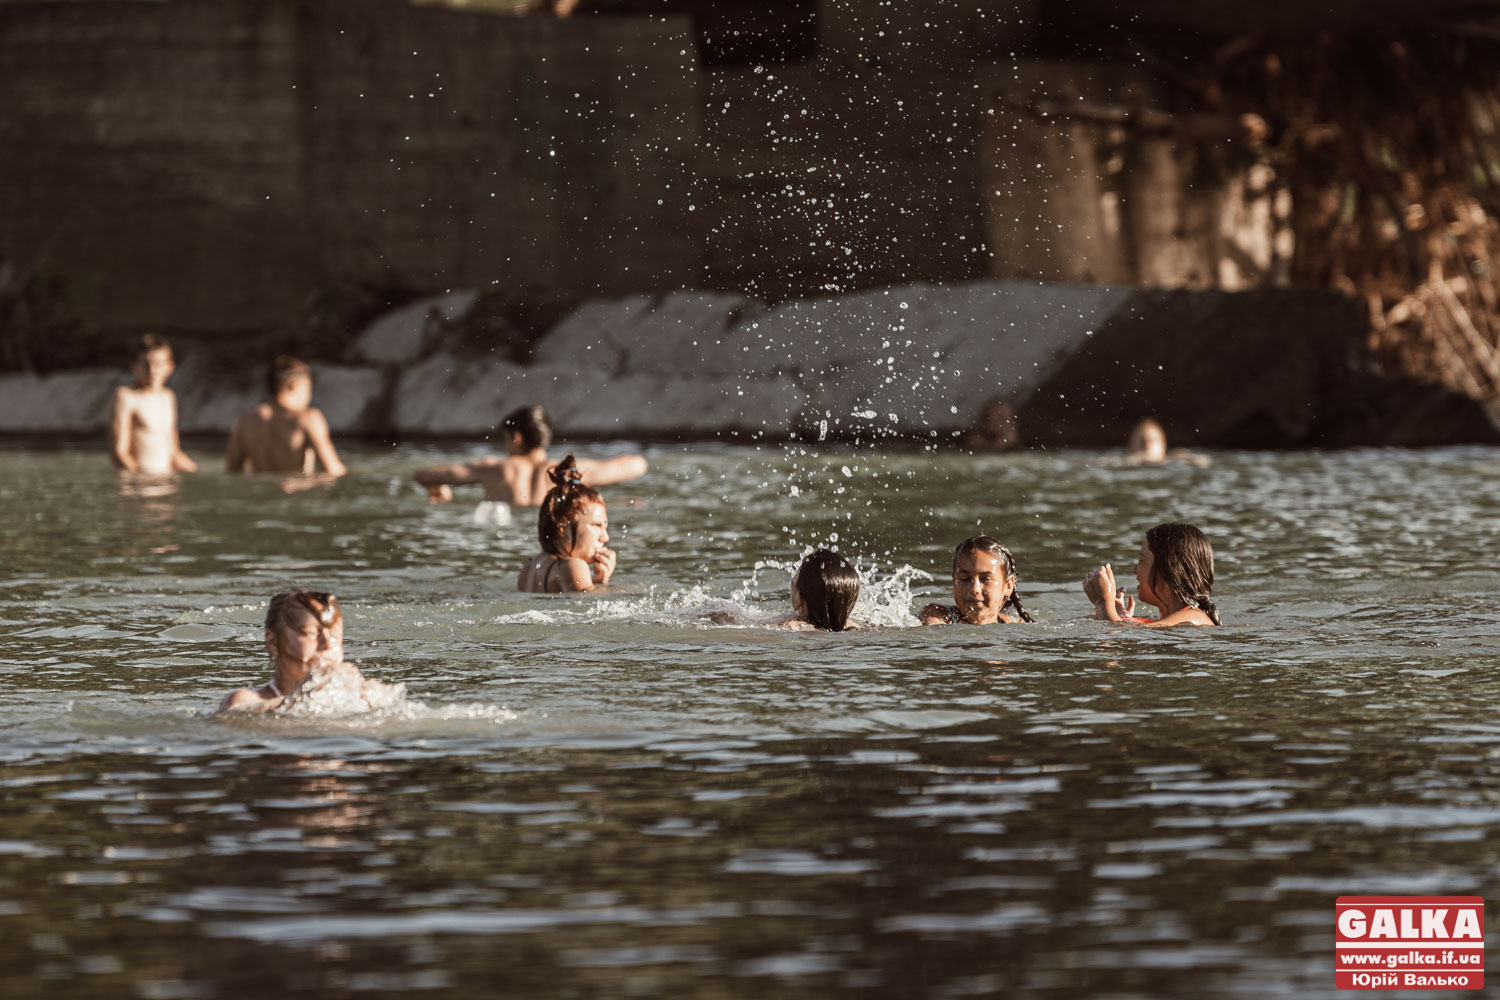 Прикарпатські річки є одними з найчистіших в Україні – дослідження (ВІДЕО)